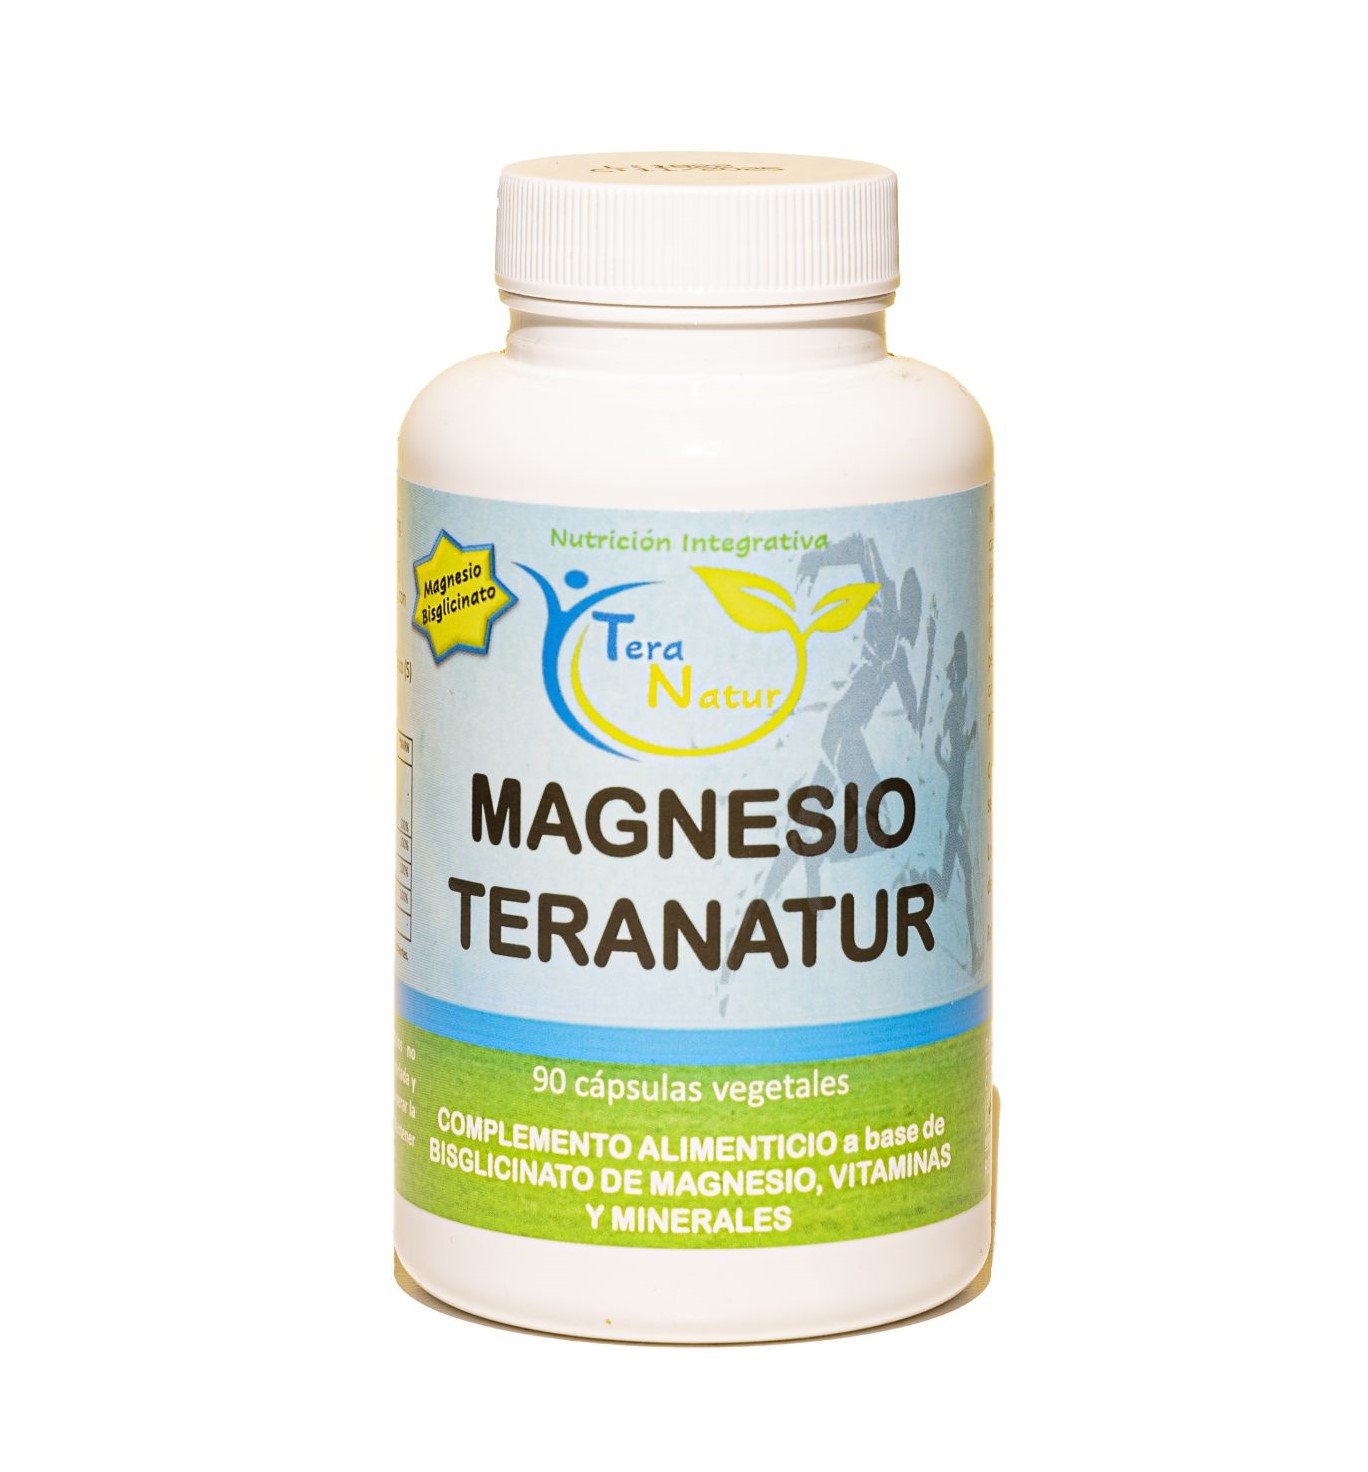 MAGNESIO TERANATUR (90 cpsulas)